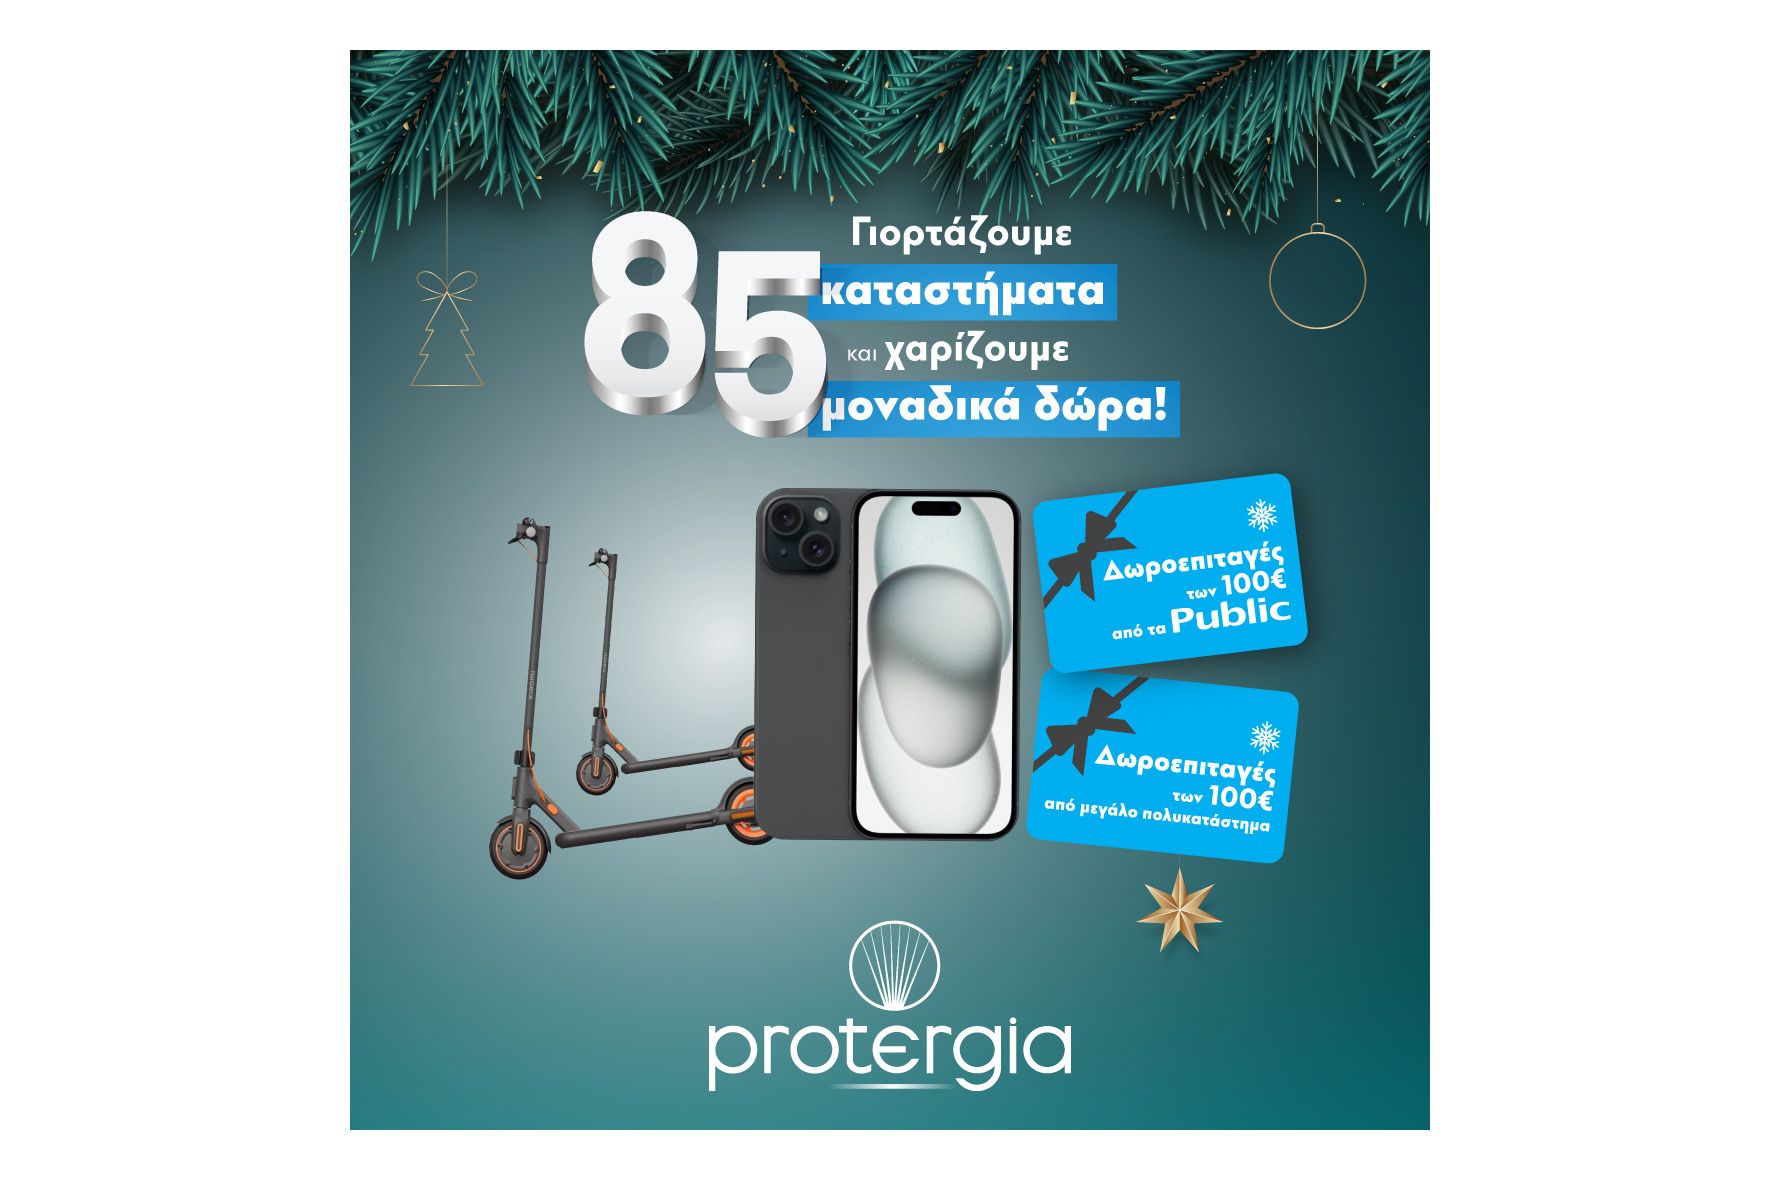 Τα καταστήματα Protergia έγιναν 85 και σε περιμένουν με μοναδικά δώρα!